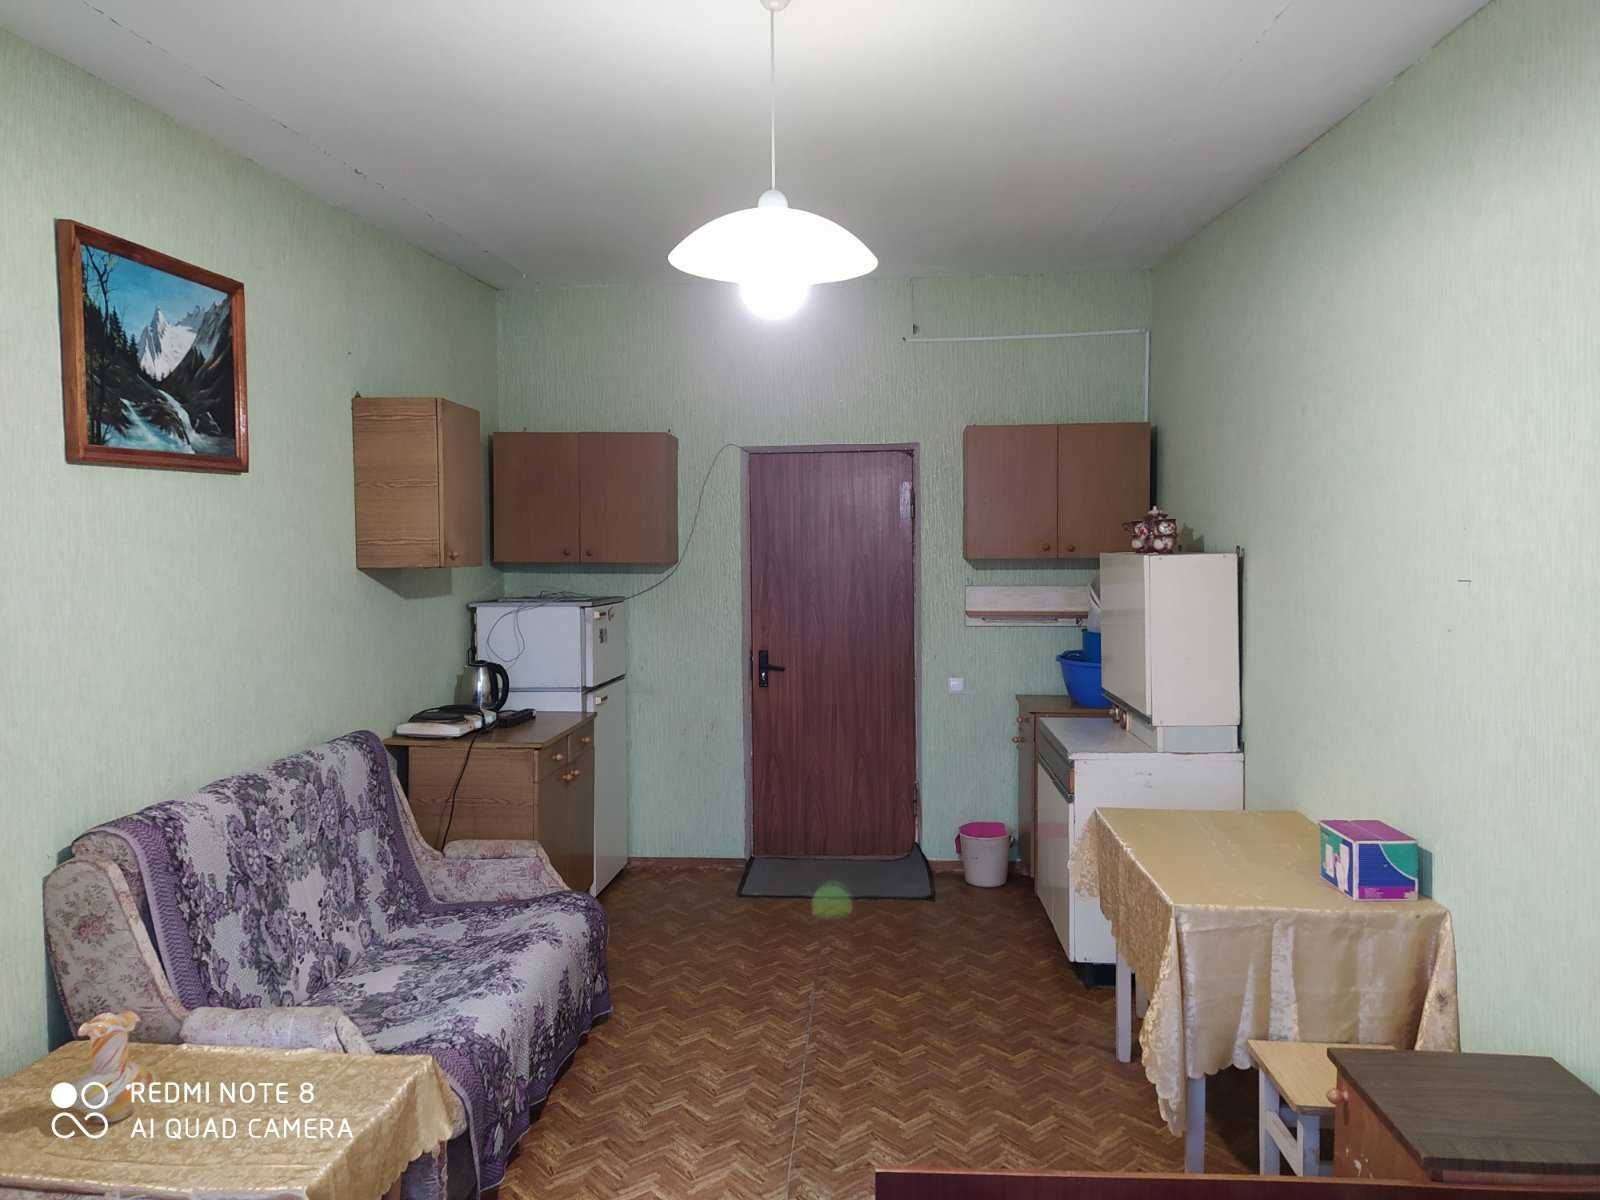 Продам комнату в коммунальной квартире р-н КСК, 5/5 кирп. 18.6 м.кв.